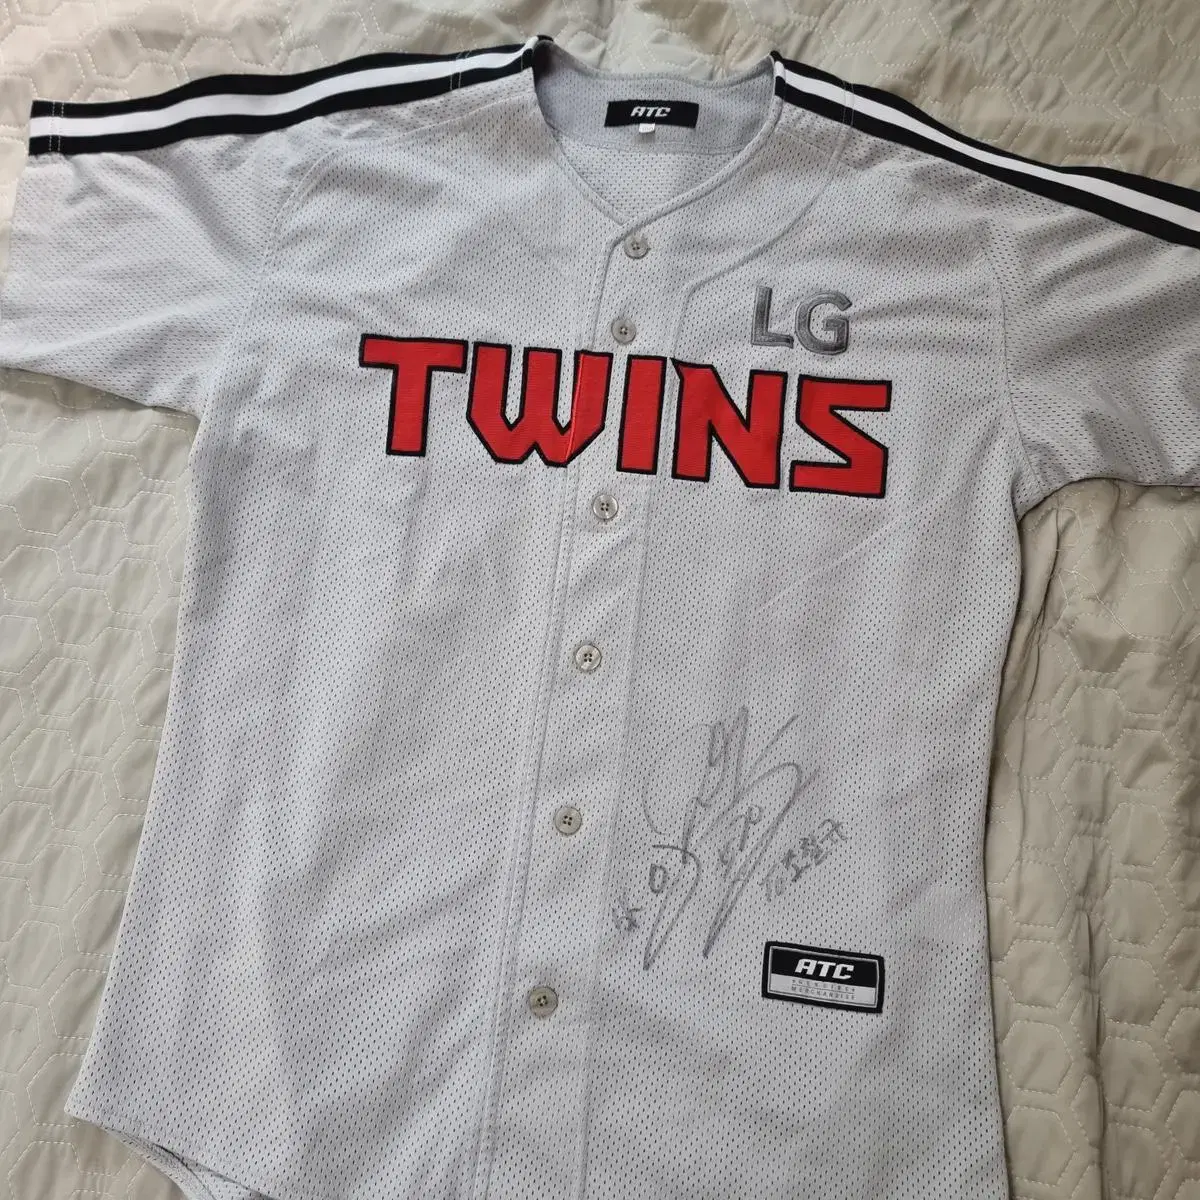 ATC, Shirts, Lg Twins Baseball Jersey From Korea